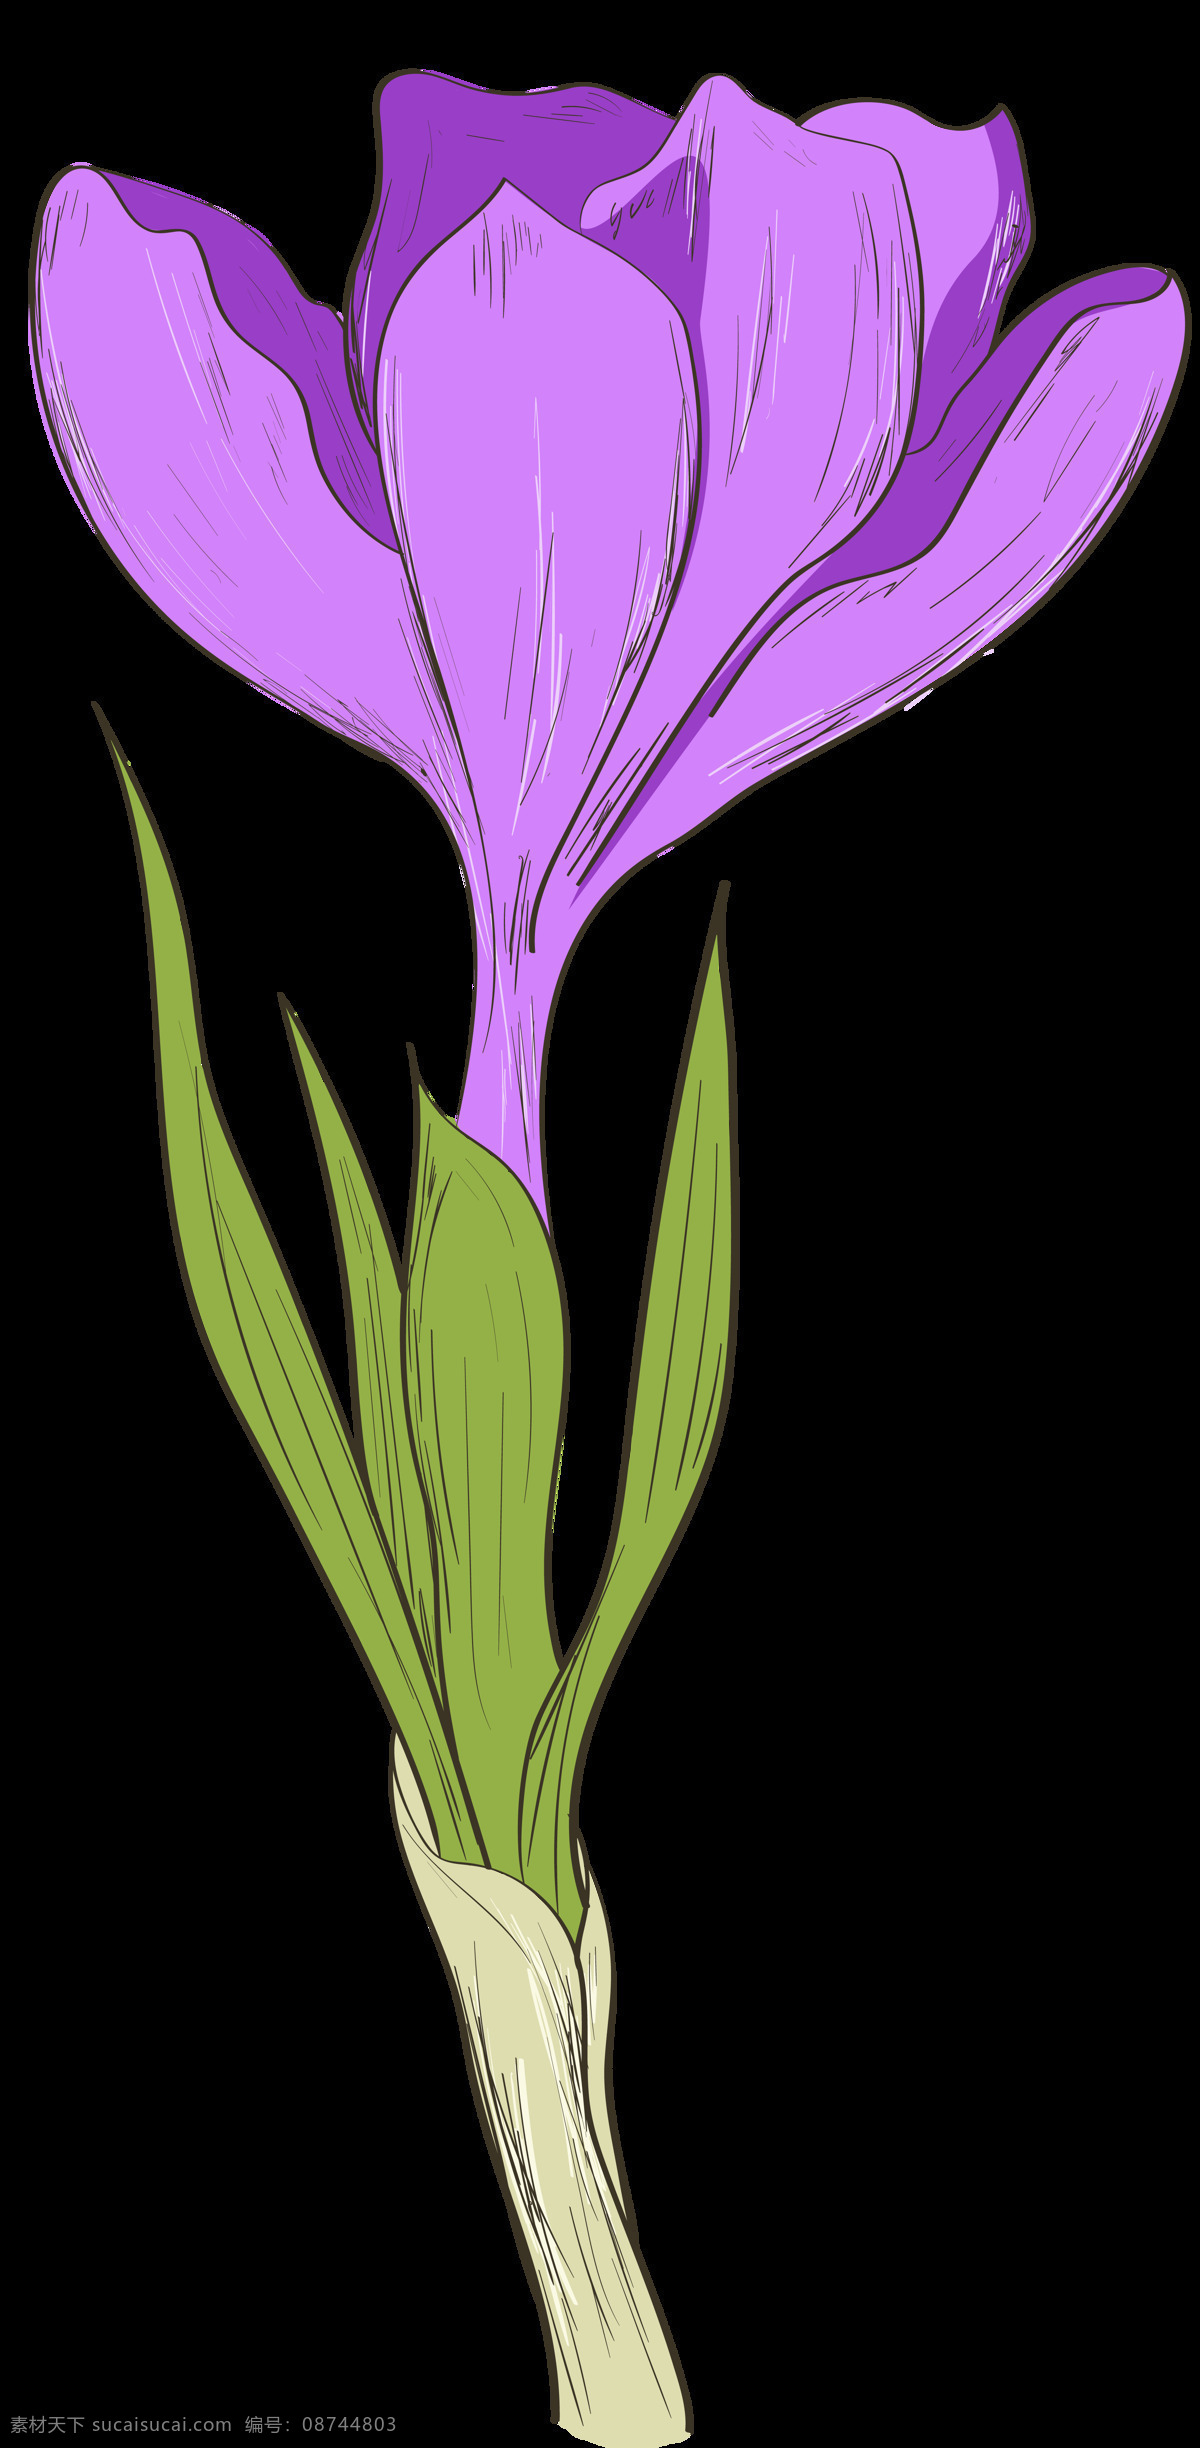 手绘 朵 紫色 花 透明 花朵 花瓣 绿叶 平面素材 设计素材 矢量素材 植物